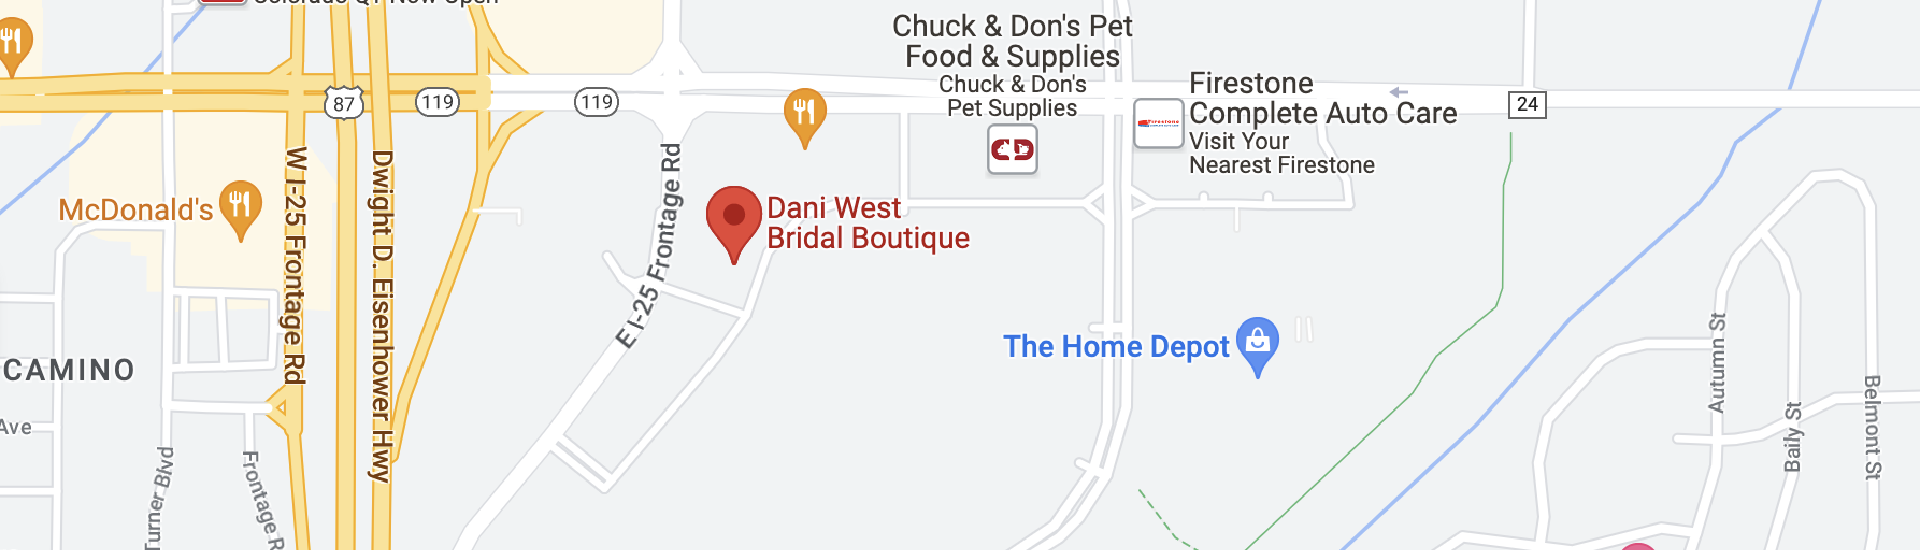 Dani West Bridal Boutique location